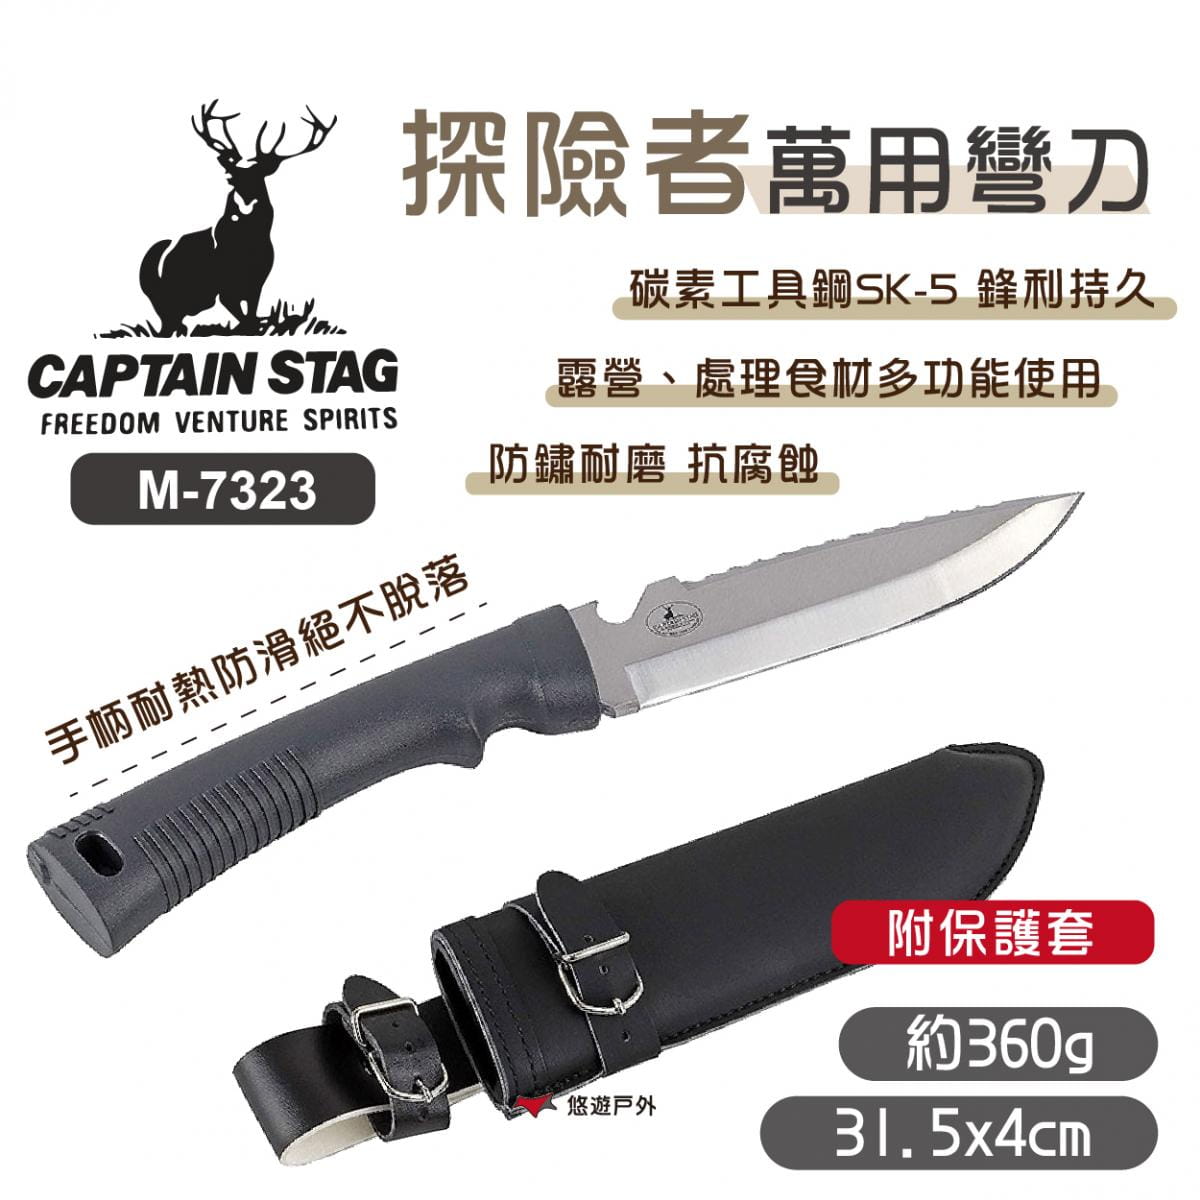 【日本鹿牌】探險者萬用彎刀(帶套) M-7323 (悠遊戶外) 0